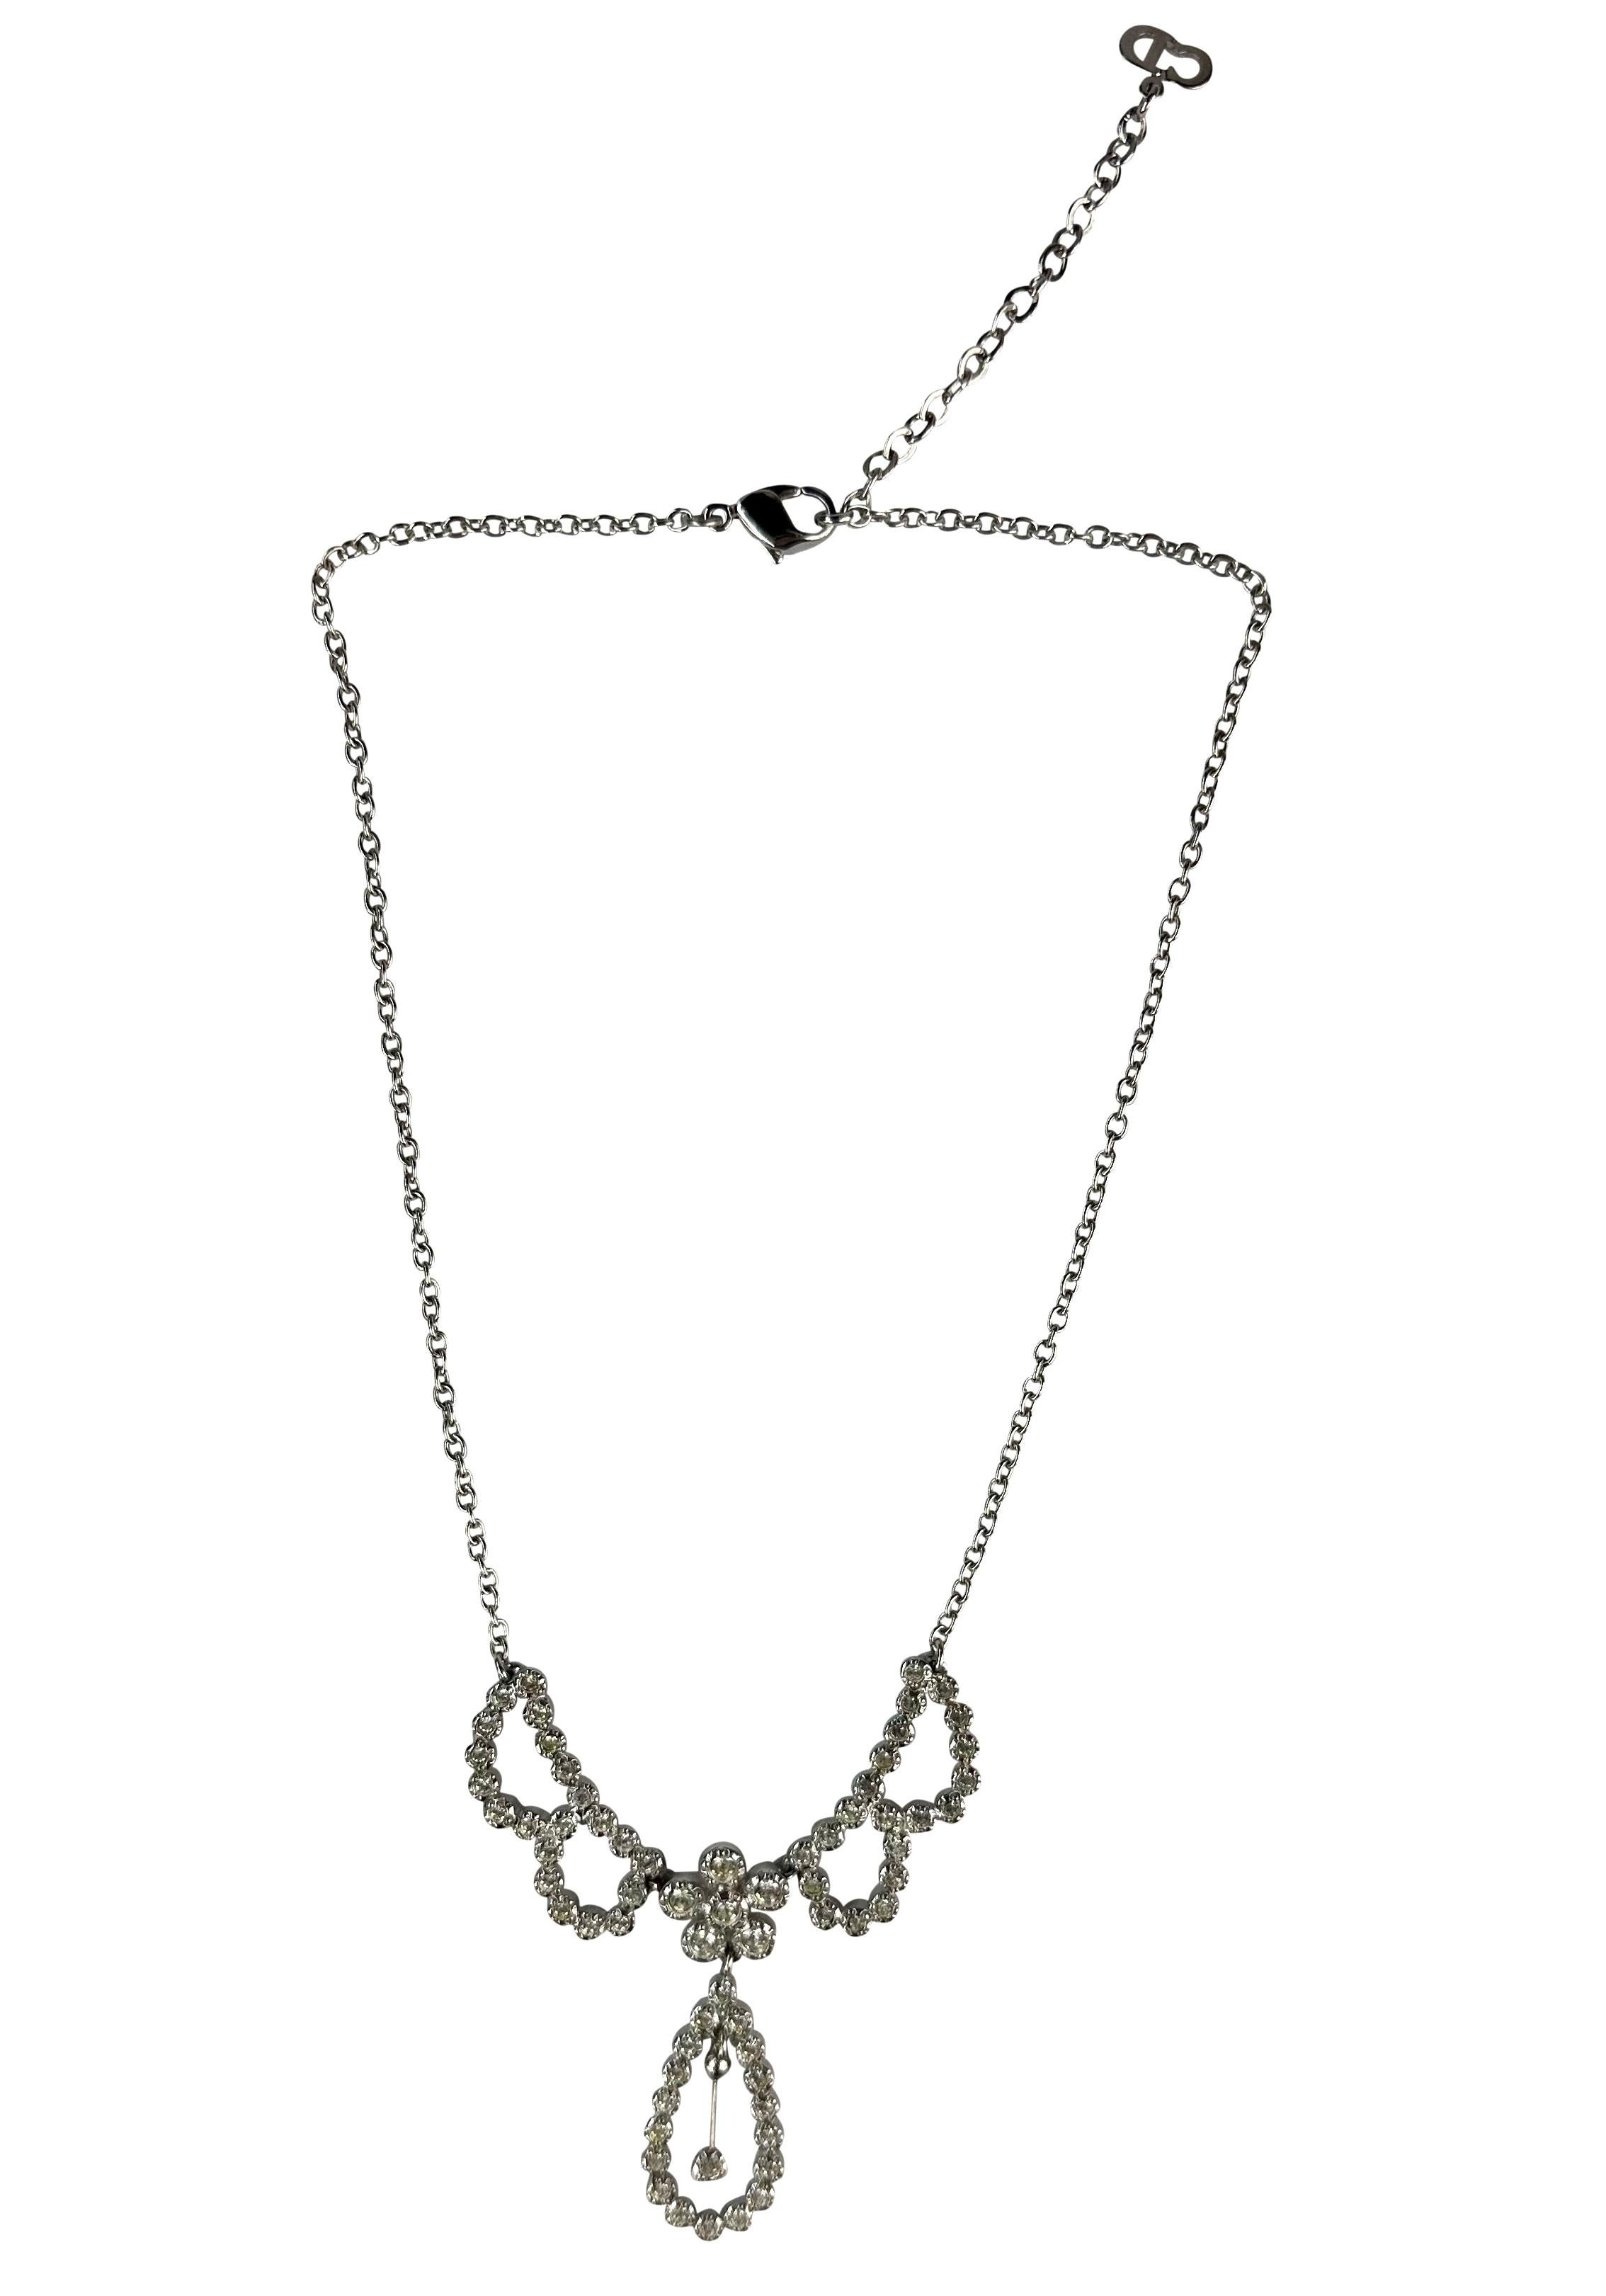 Voici un collier de goutte Christian Dior en argent, orné de strass, conçu par John Galliano. Datant du début des années 2000, ce magnifique collier se compose d'une chaîne délicate et d'une goutte recouverte de strass.

Mesures approximatives